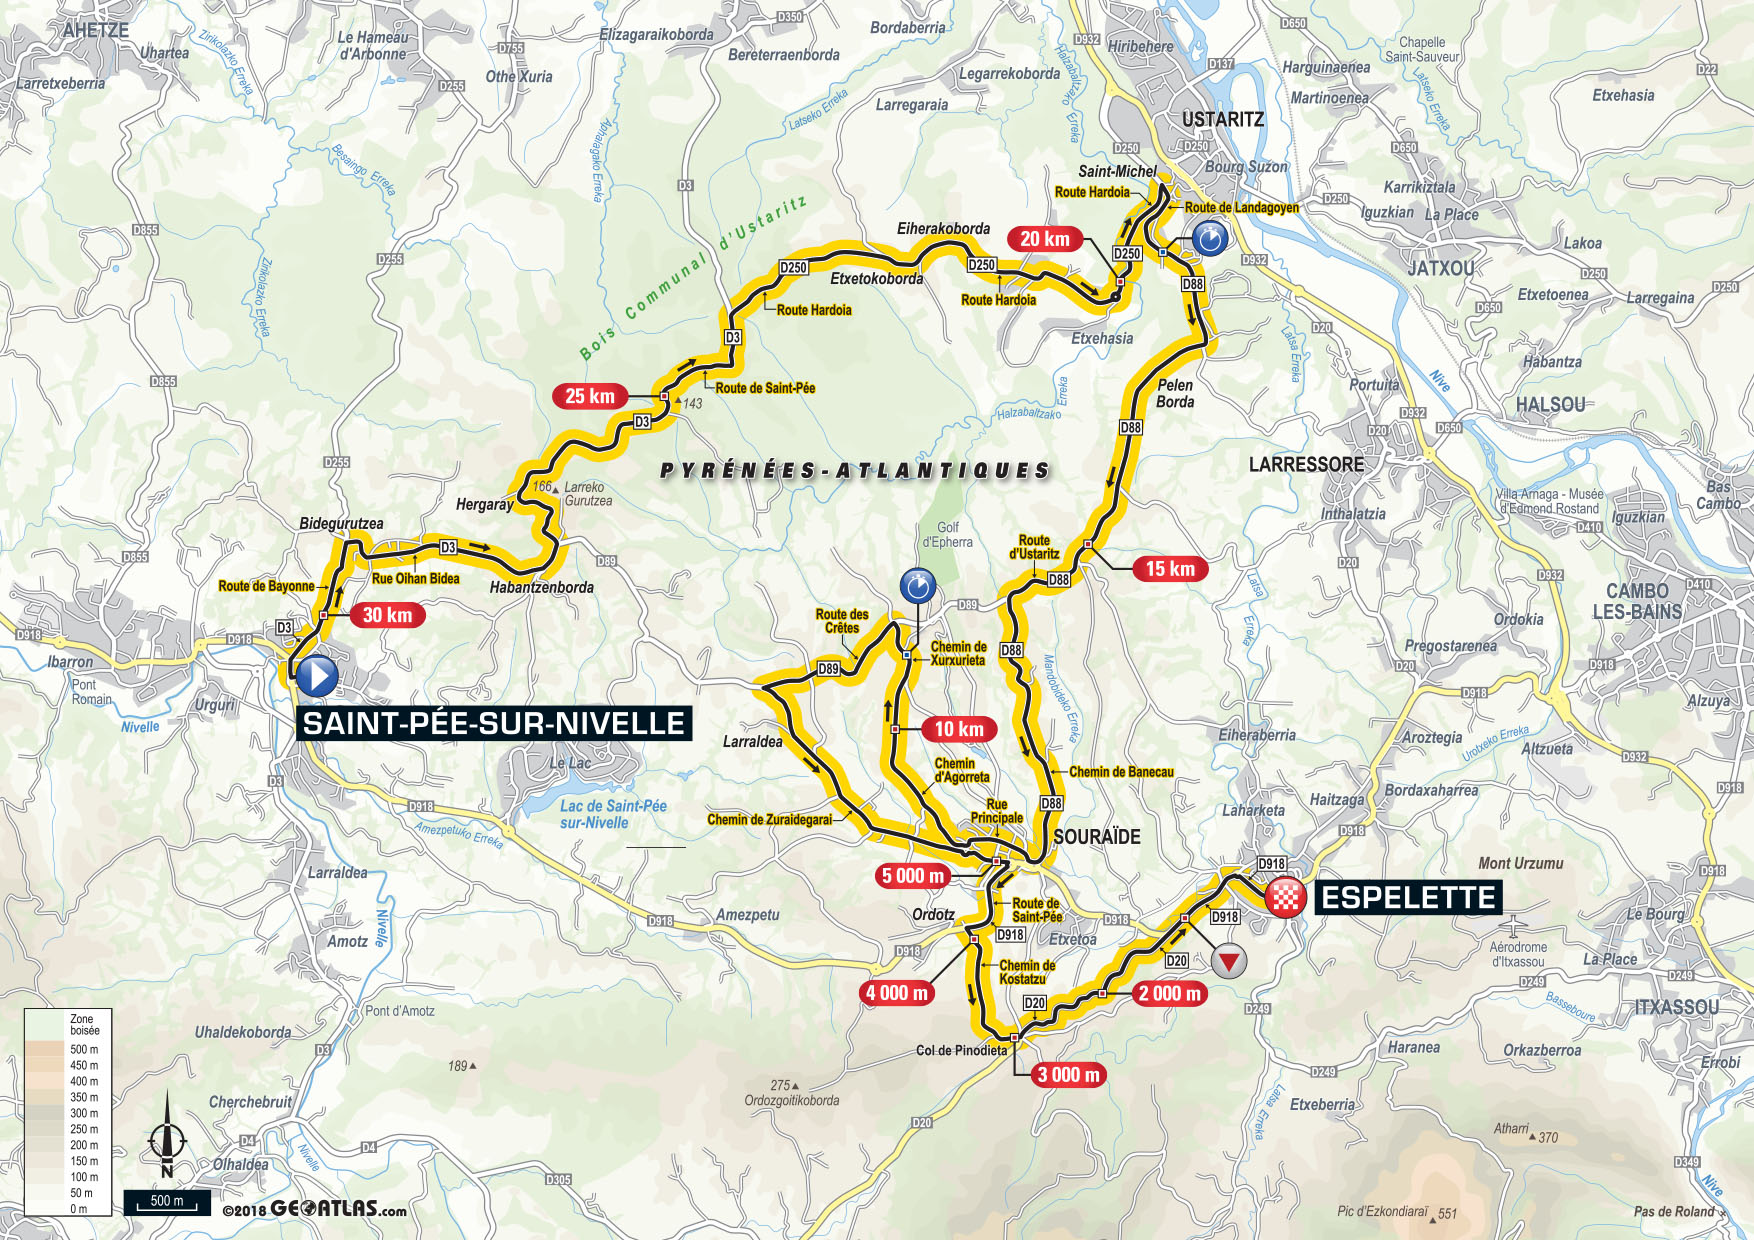 De route van vandaag (Bron: Letour.fr)